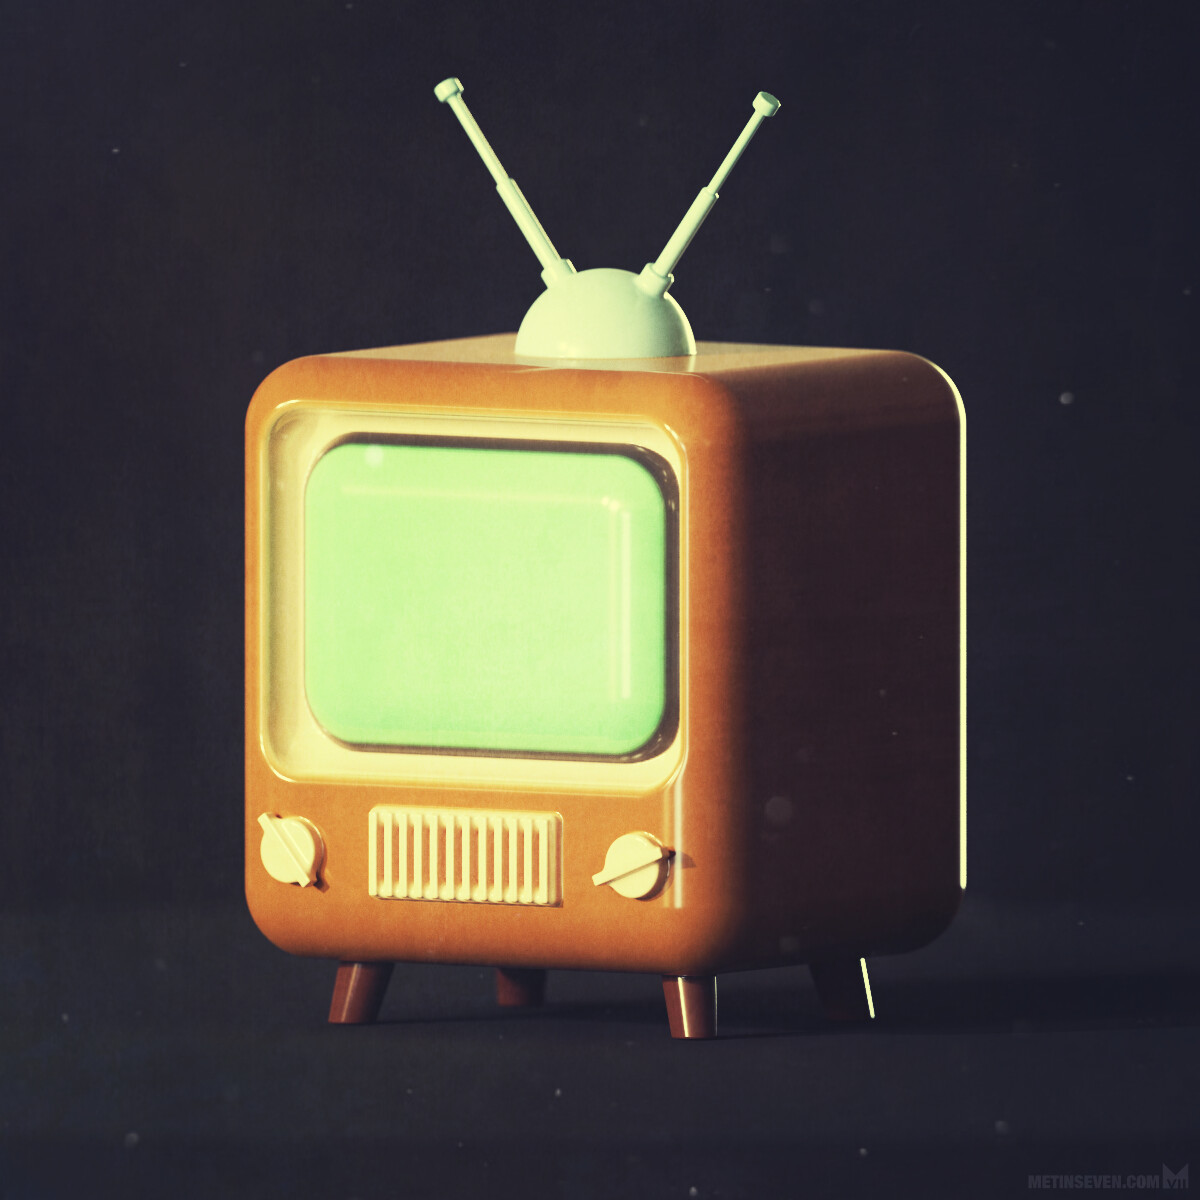 3D icon design of a retro-style television